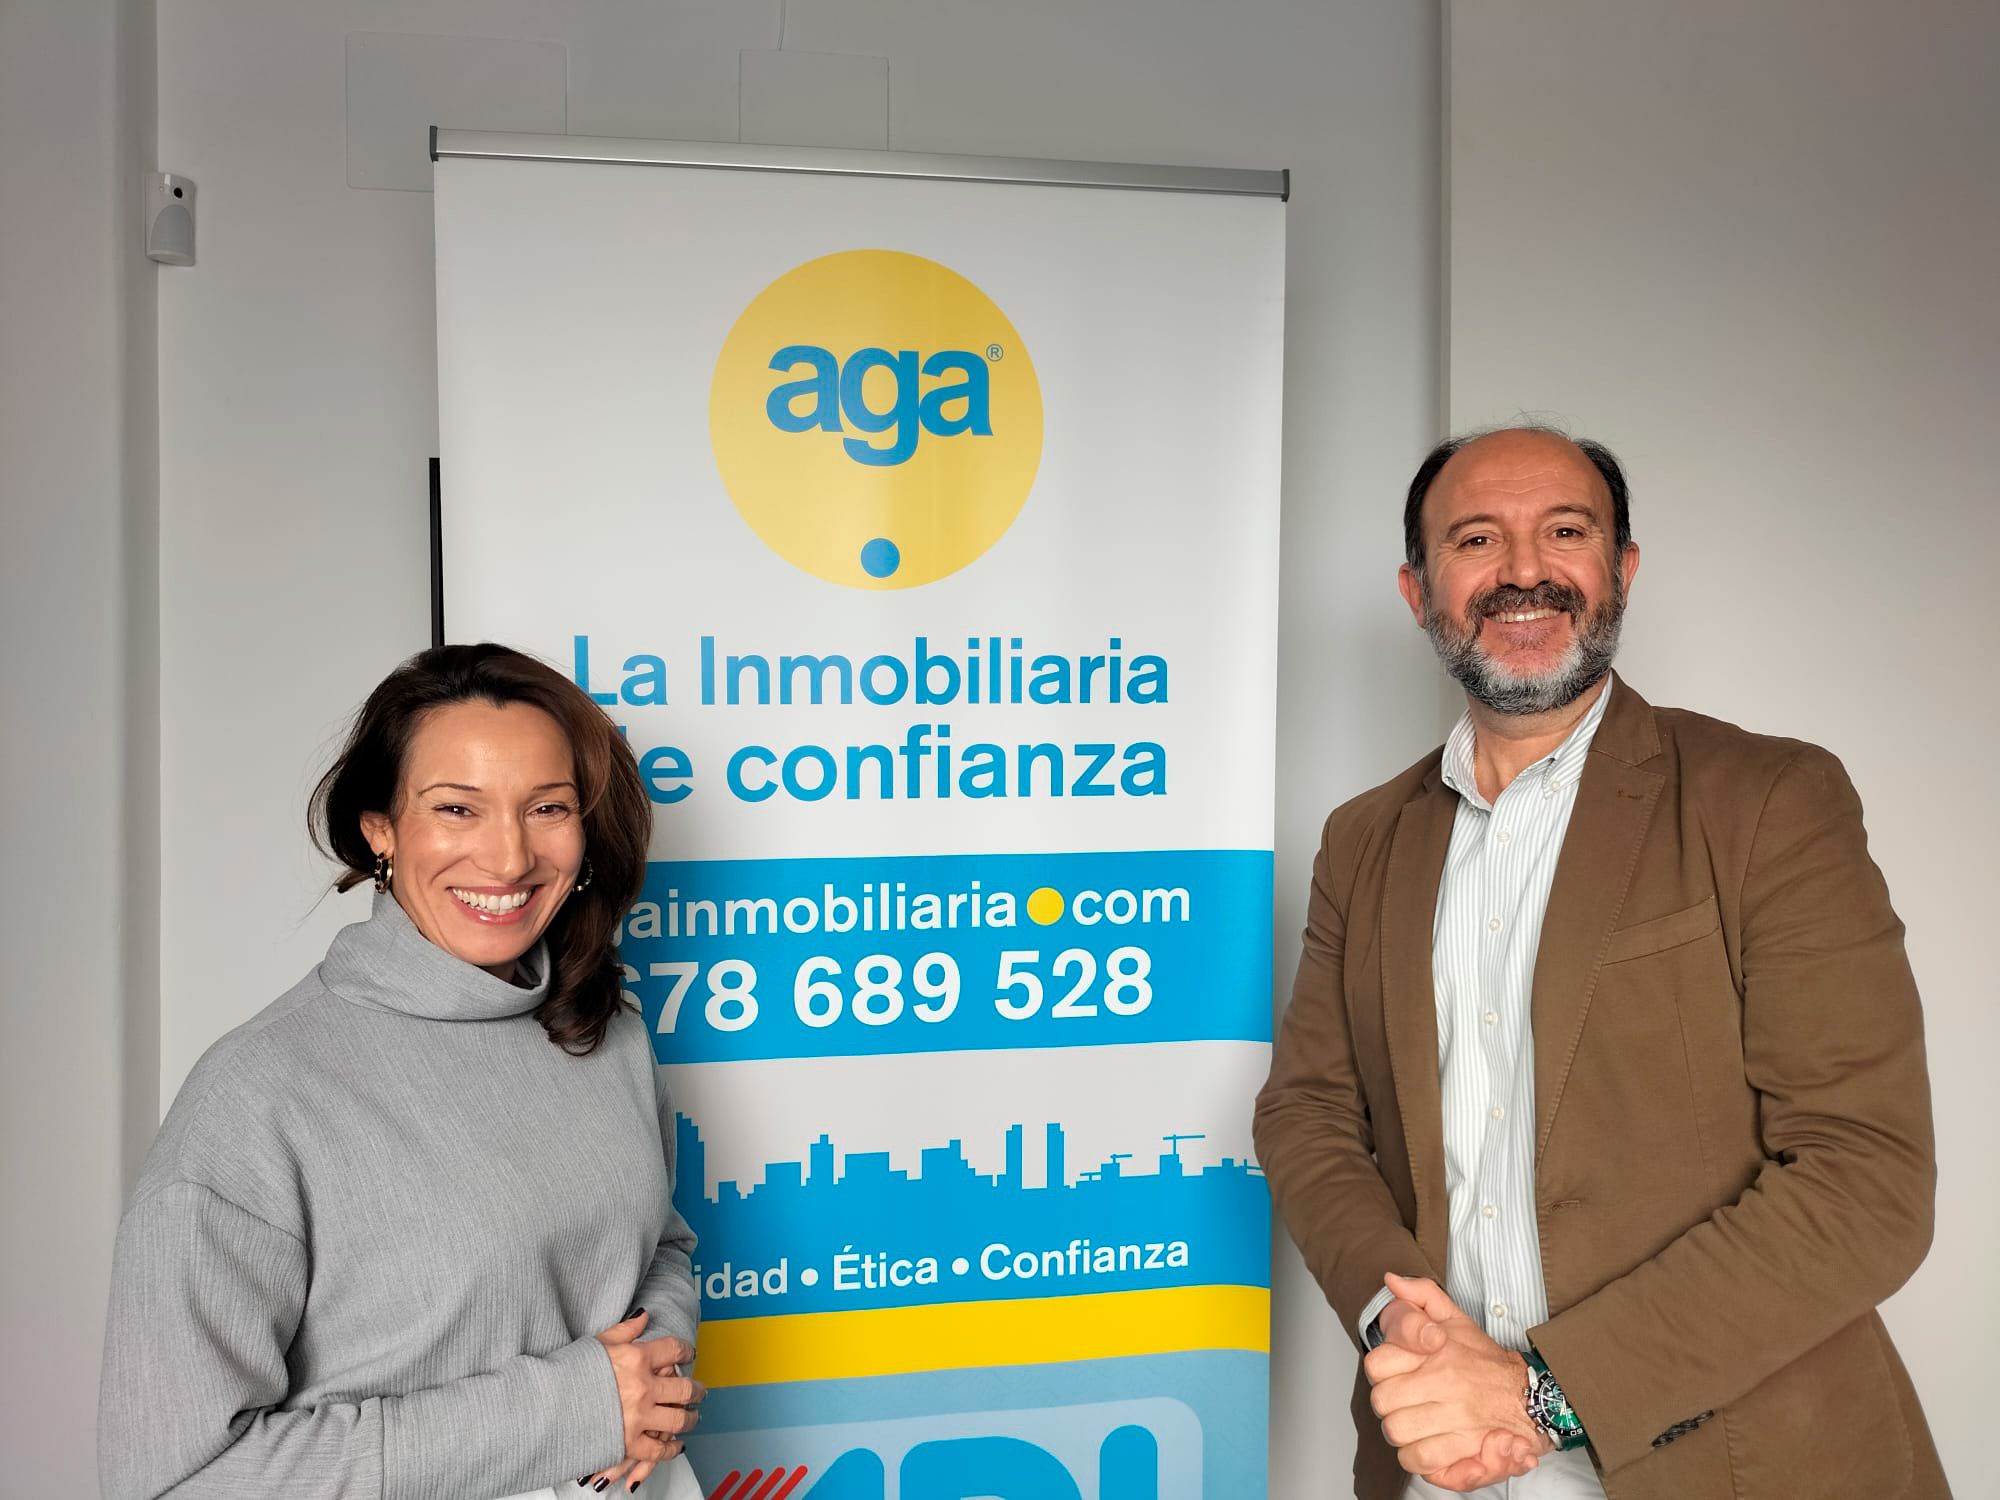 Bienvenidos a nuestra agencia inmobiliaria, estamos encantados de ofrecerle el mejor servicio en la intermediación inmobiliaria. Somos  grandes profesionales especializados en la venta y alquiler de pisos, locales, oficinas en Jaén. 